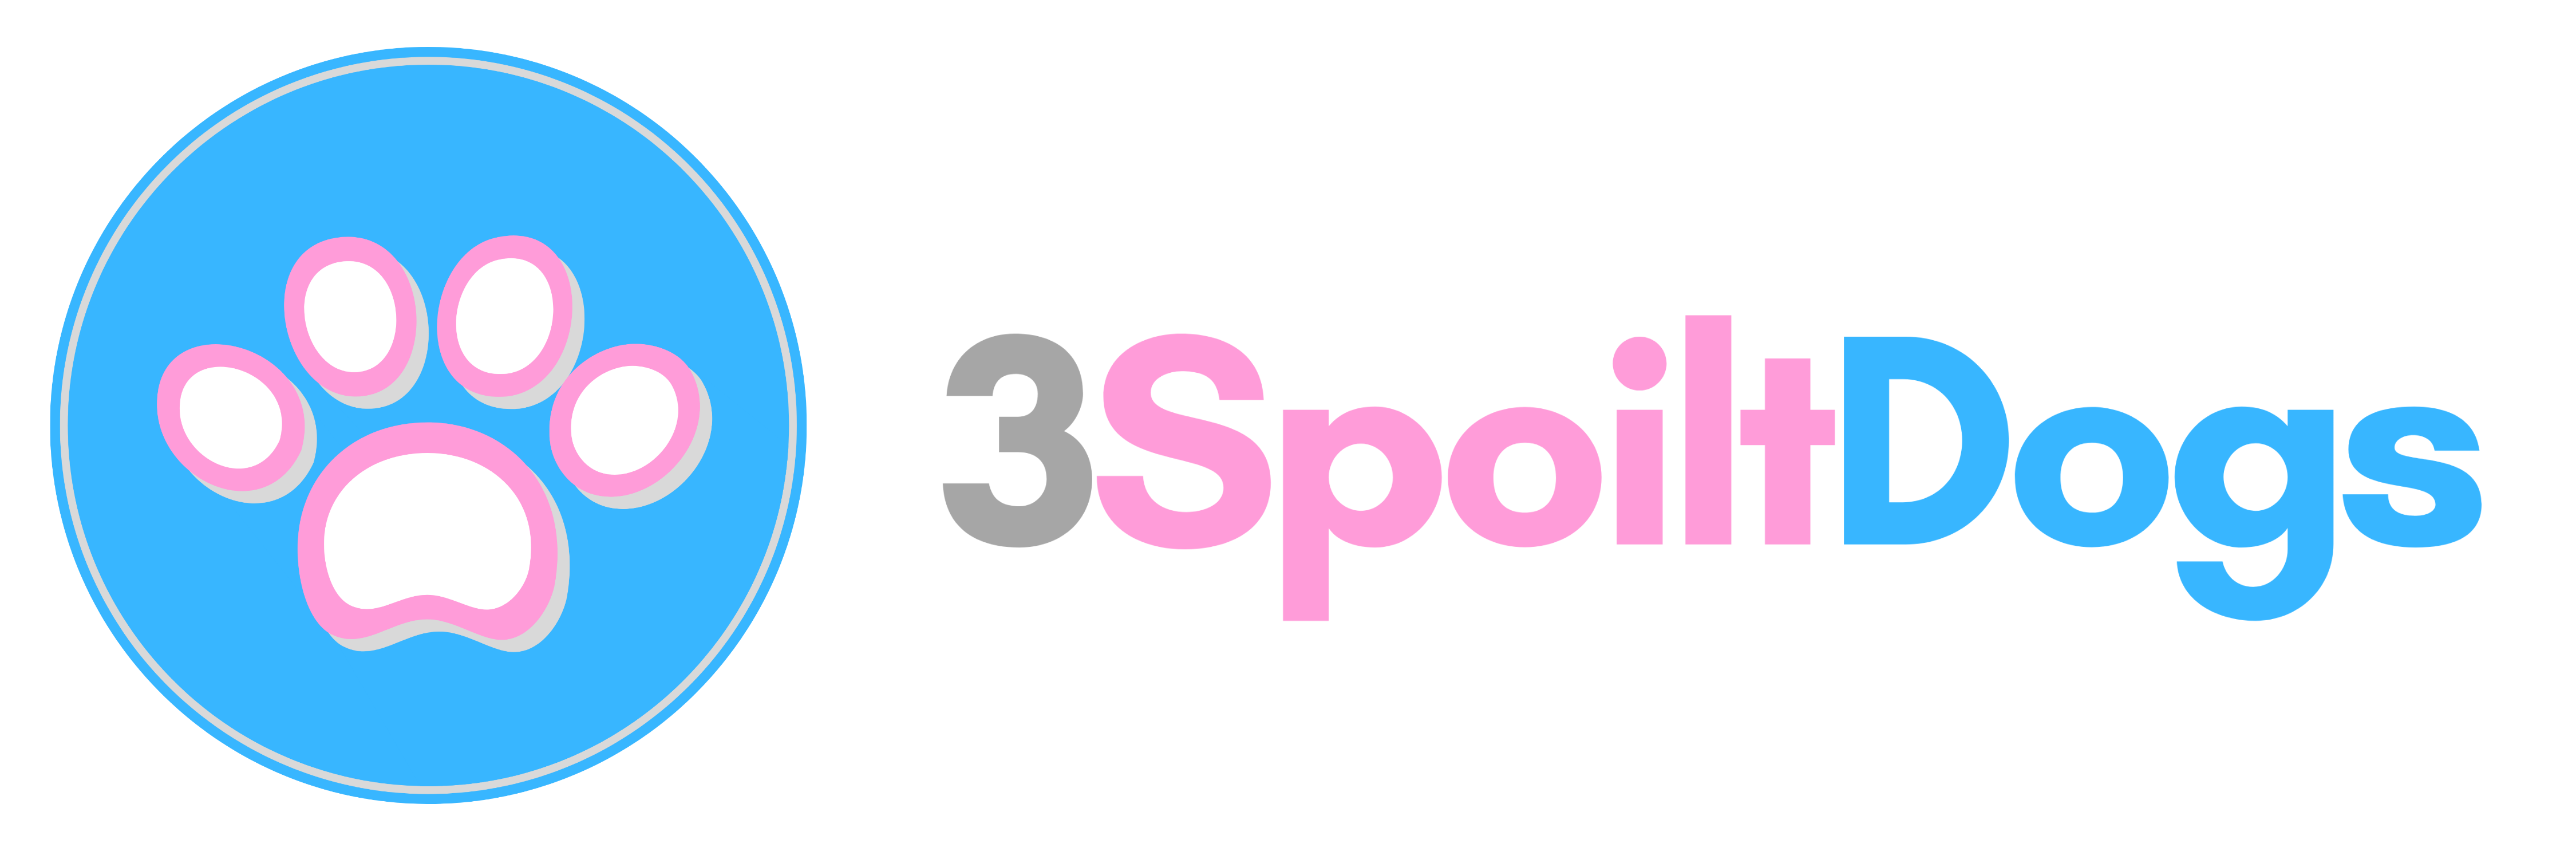 3 Spoilt Dogs logo